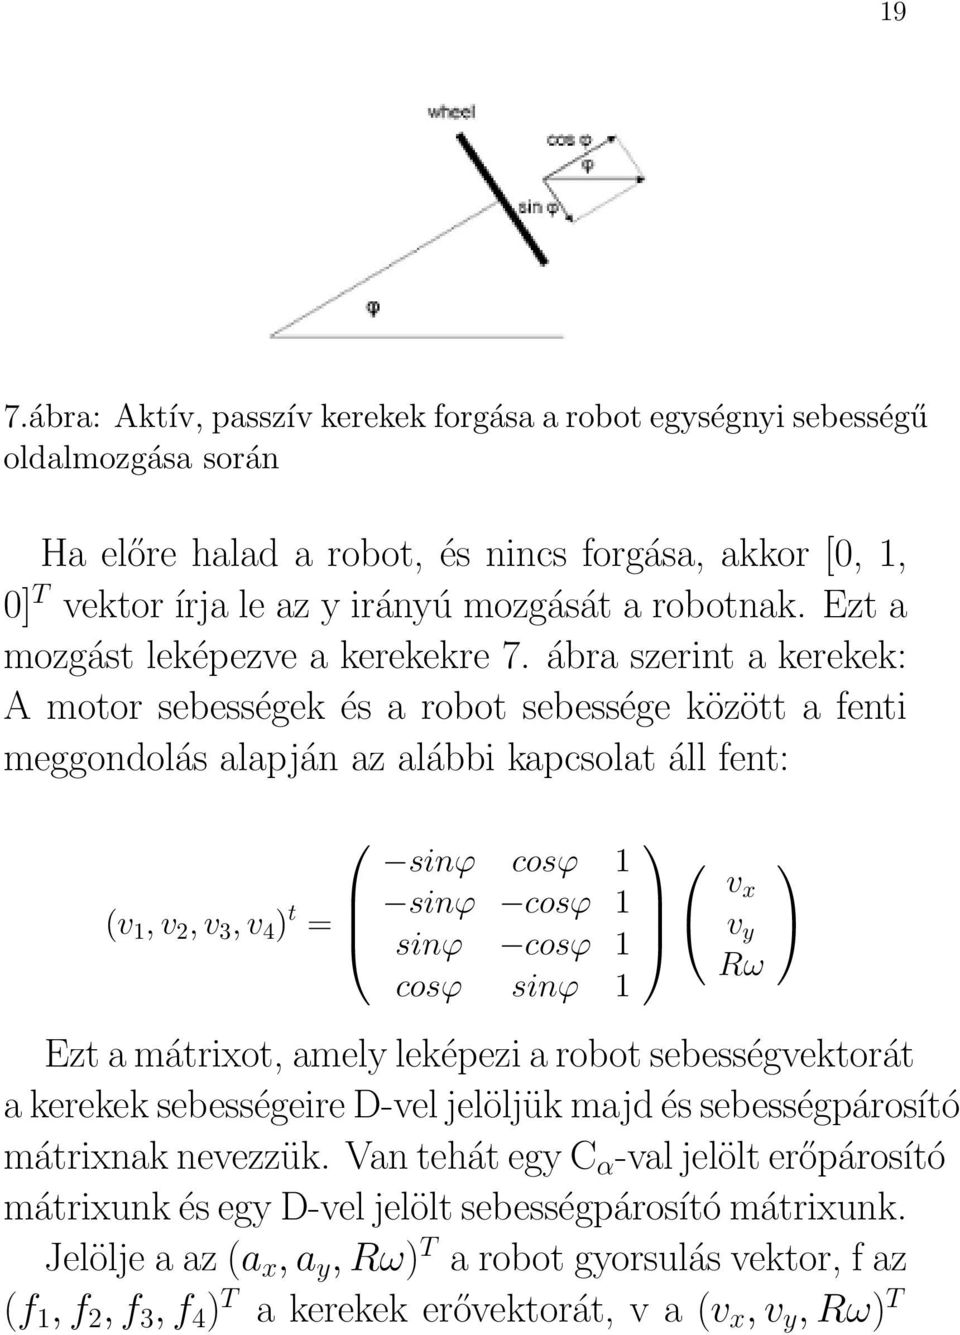 ábra szerint a kerekek: A motor sebességek és a robot sebessége között a fenti meggondolás alapján az alábbi kapcsolat áll fent: (v 1, v 2, v 3, v 4 ) t = sinϕ cosϕ 1 sinϕ cosϕ 1 sinϕ cosϕ 1 cosϕ